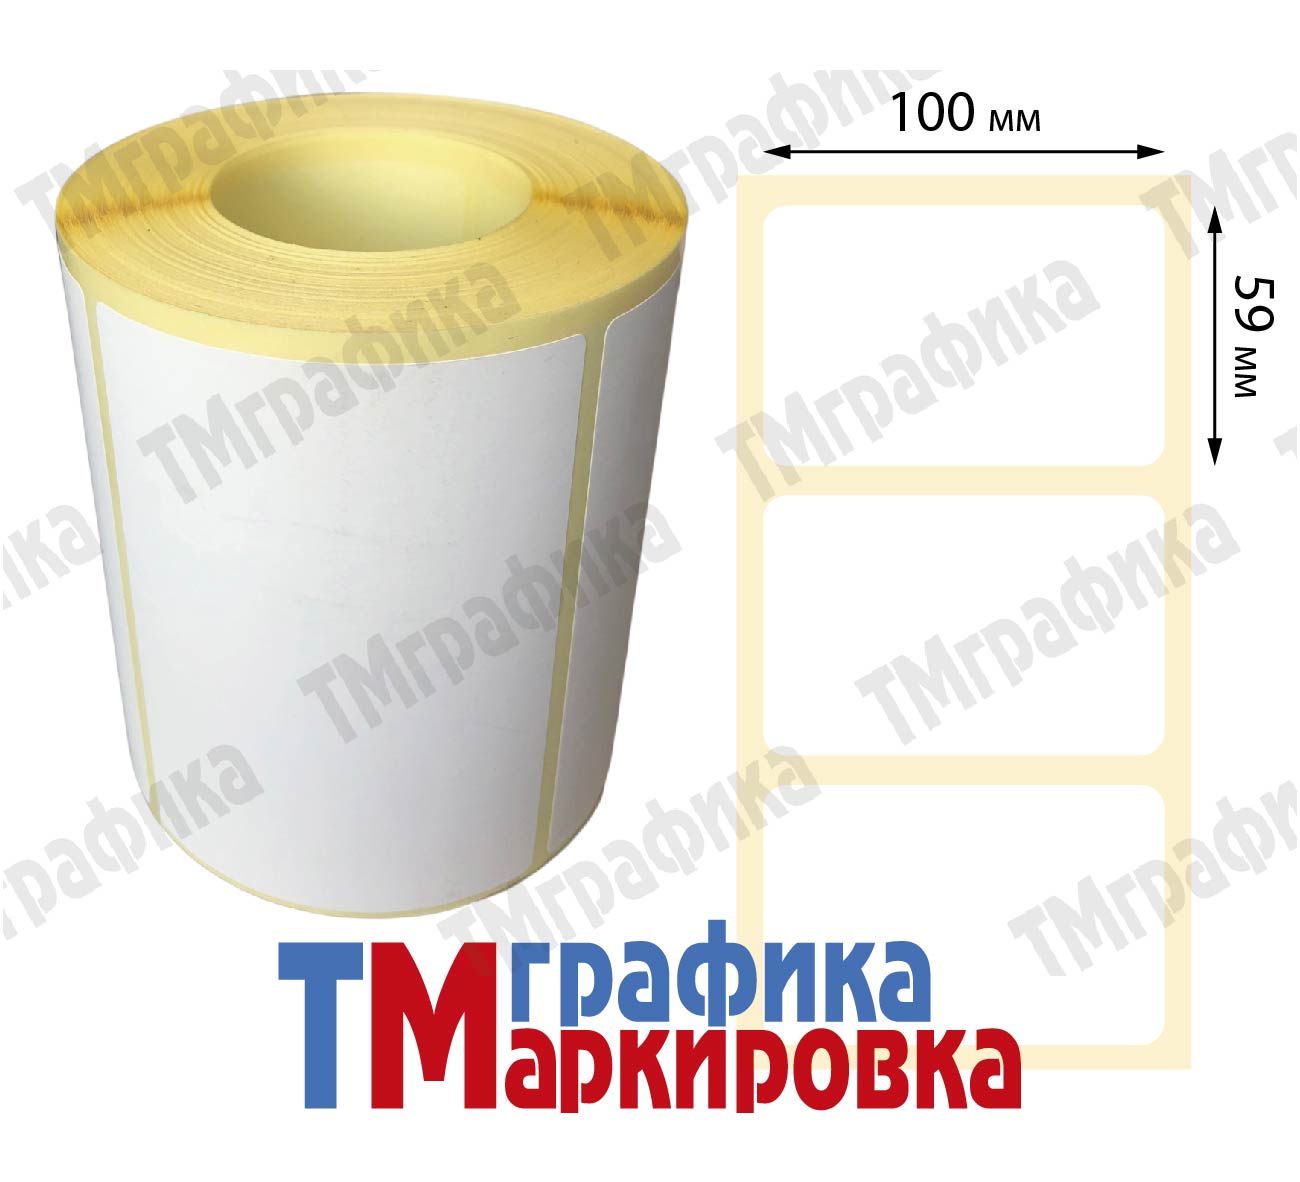 100х60 мм 500 шт. полипропиленовые Термотрансферные этикетки - 1 115.22 руб.